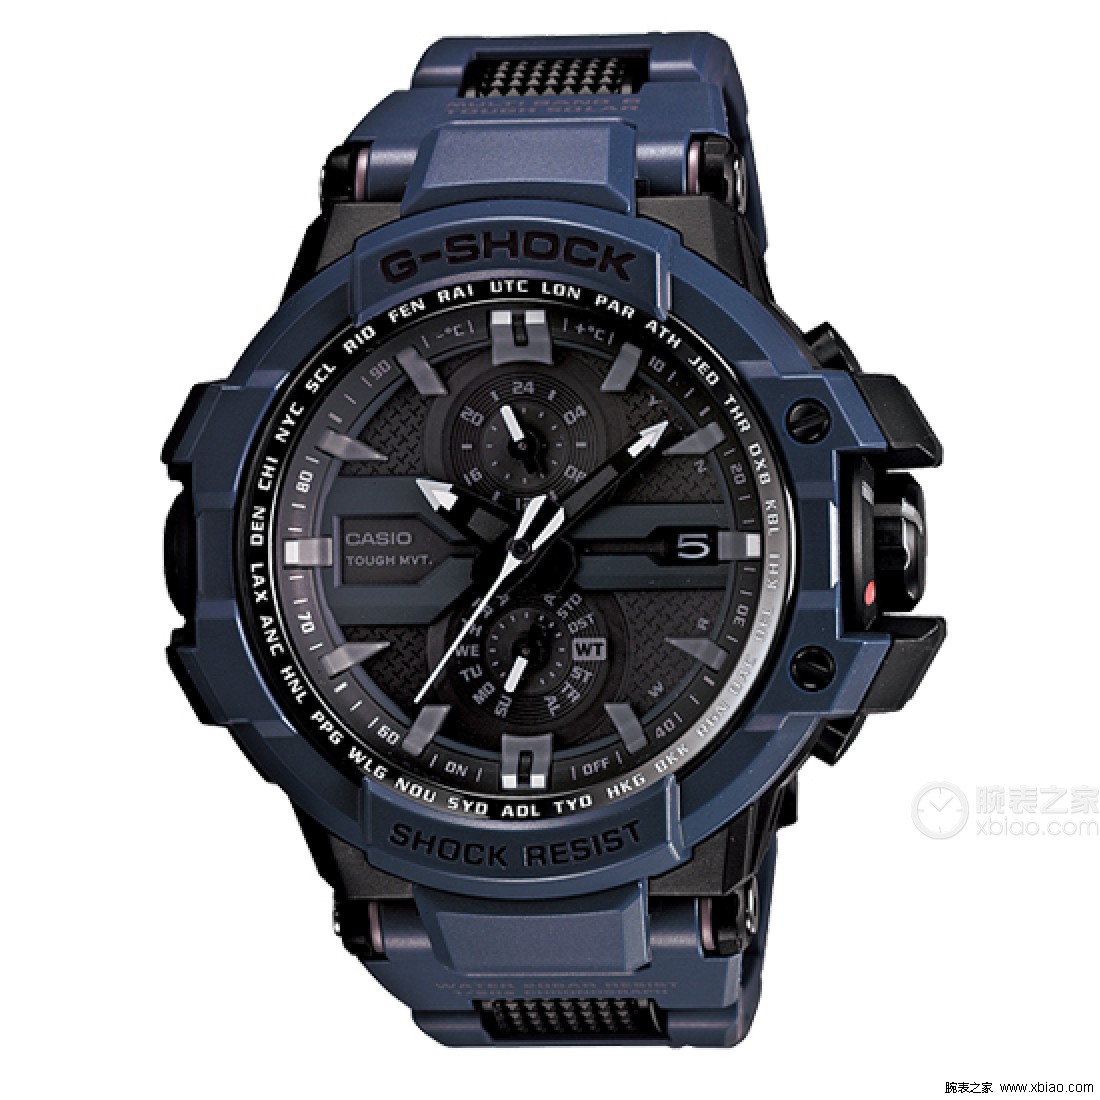 Casio G-Shock Mudmaster GWG1000-1A3 | WatchUSeek Watch Forums